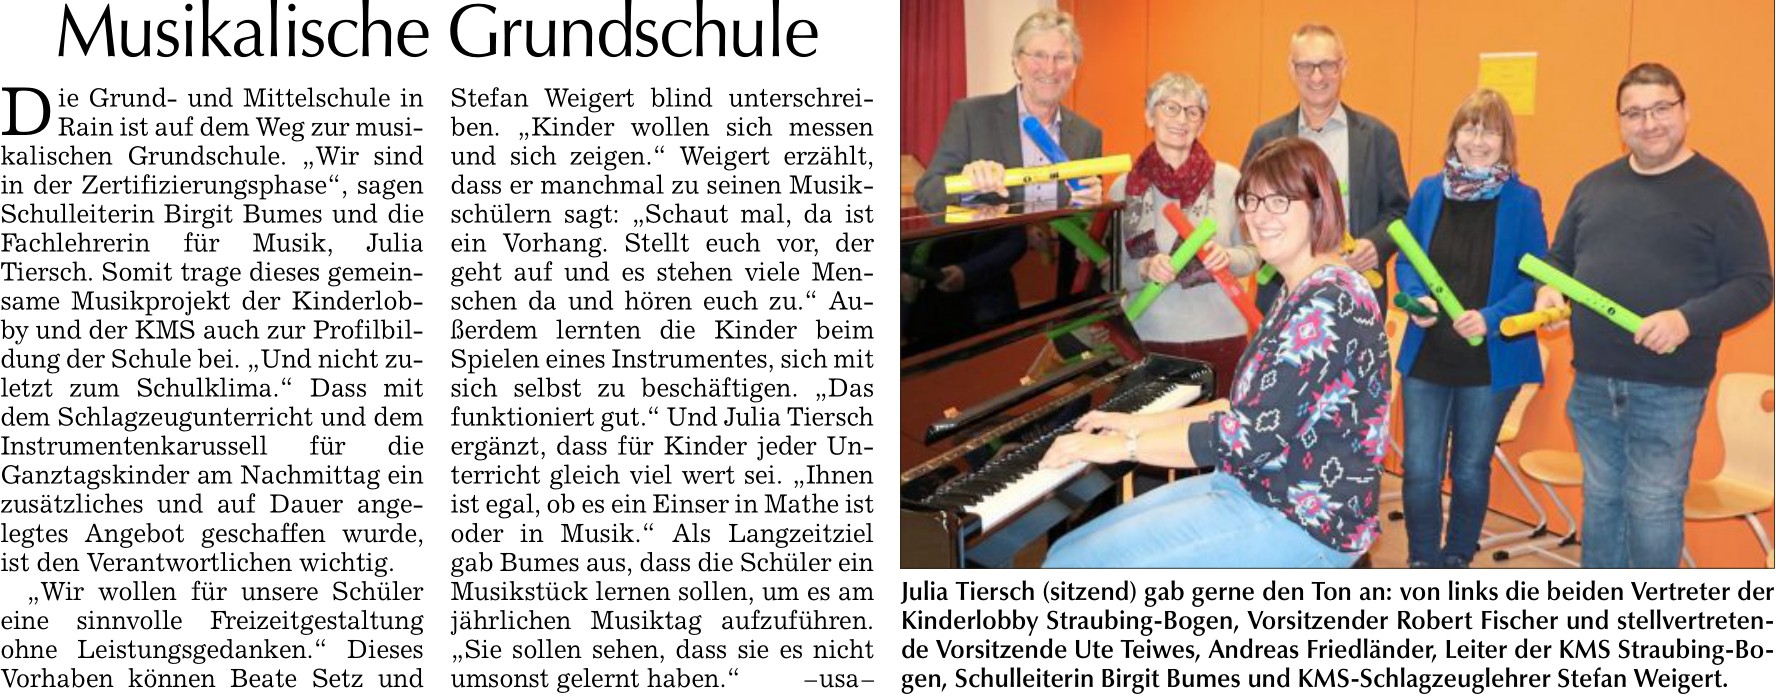 Bild zu Musikalische Grundschule, Bogener Zeitung vom 25.11.2023